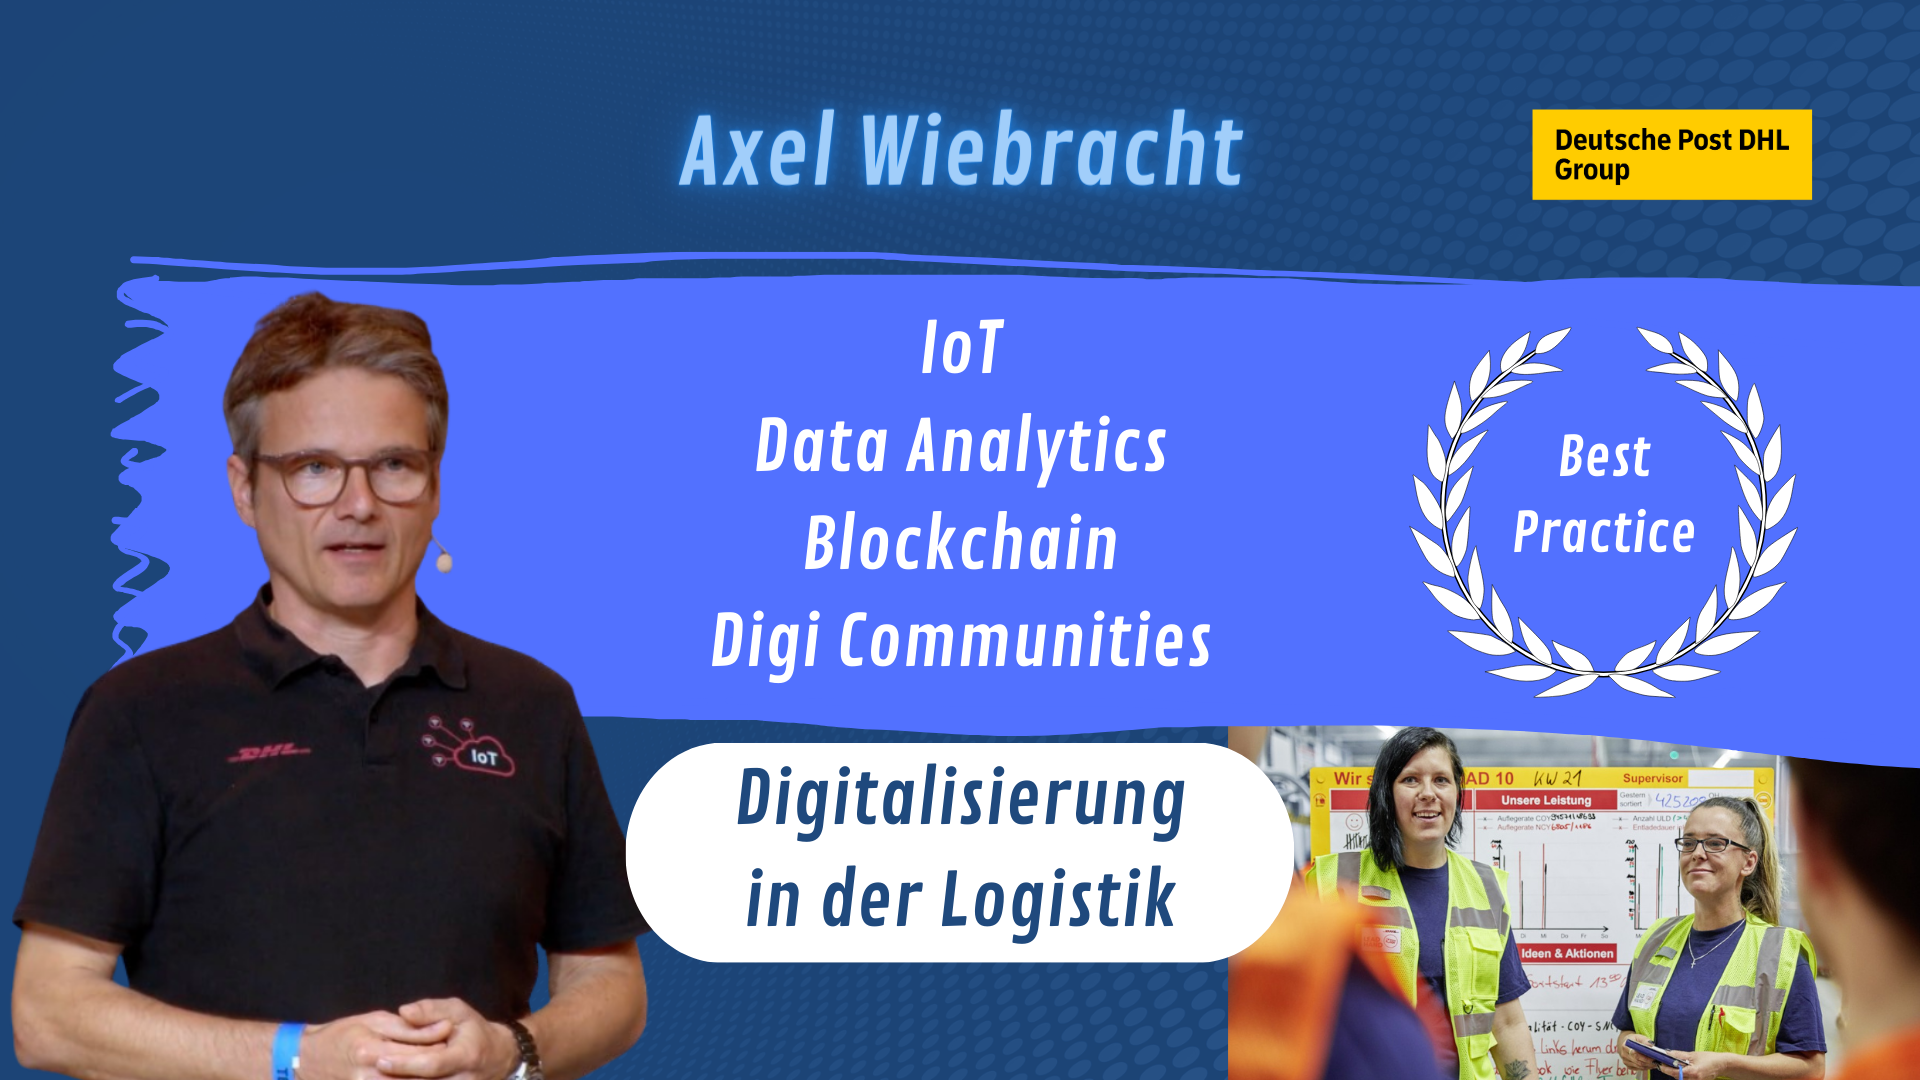 DIGITAL - Digitalisierung in der Logistik mit Axel Wiebracht